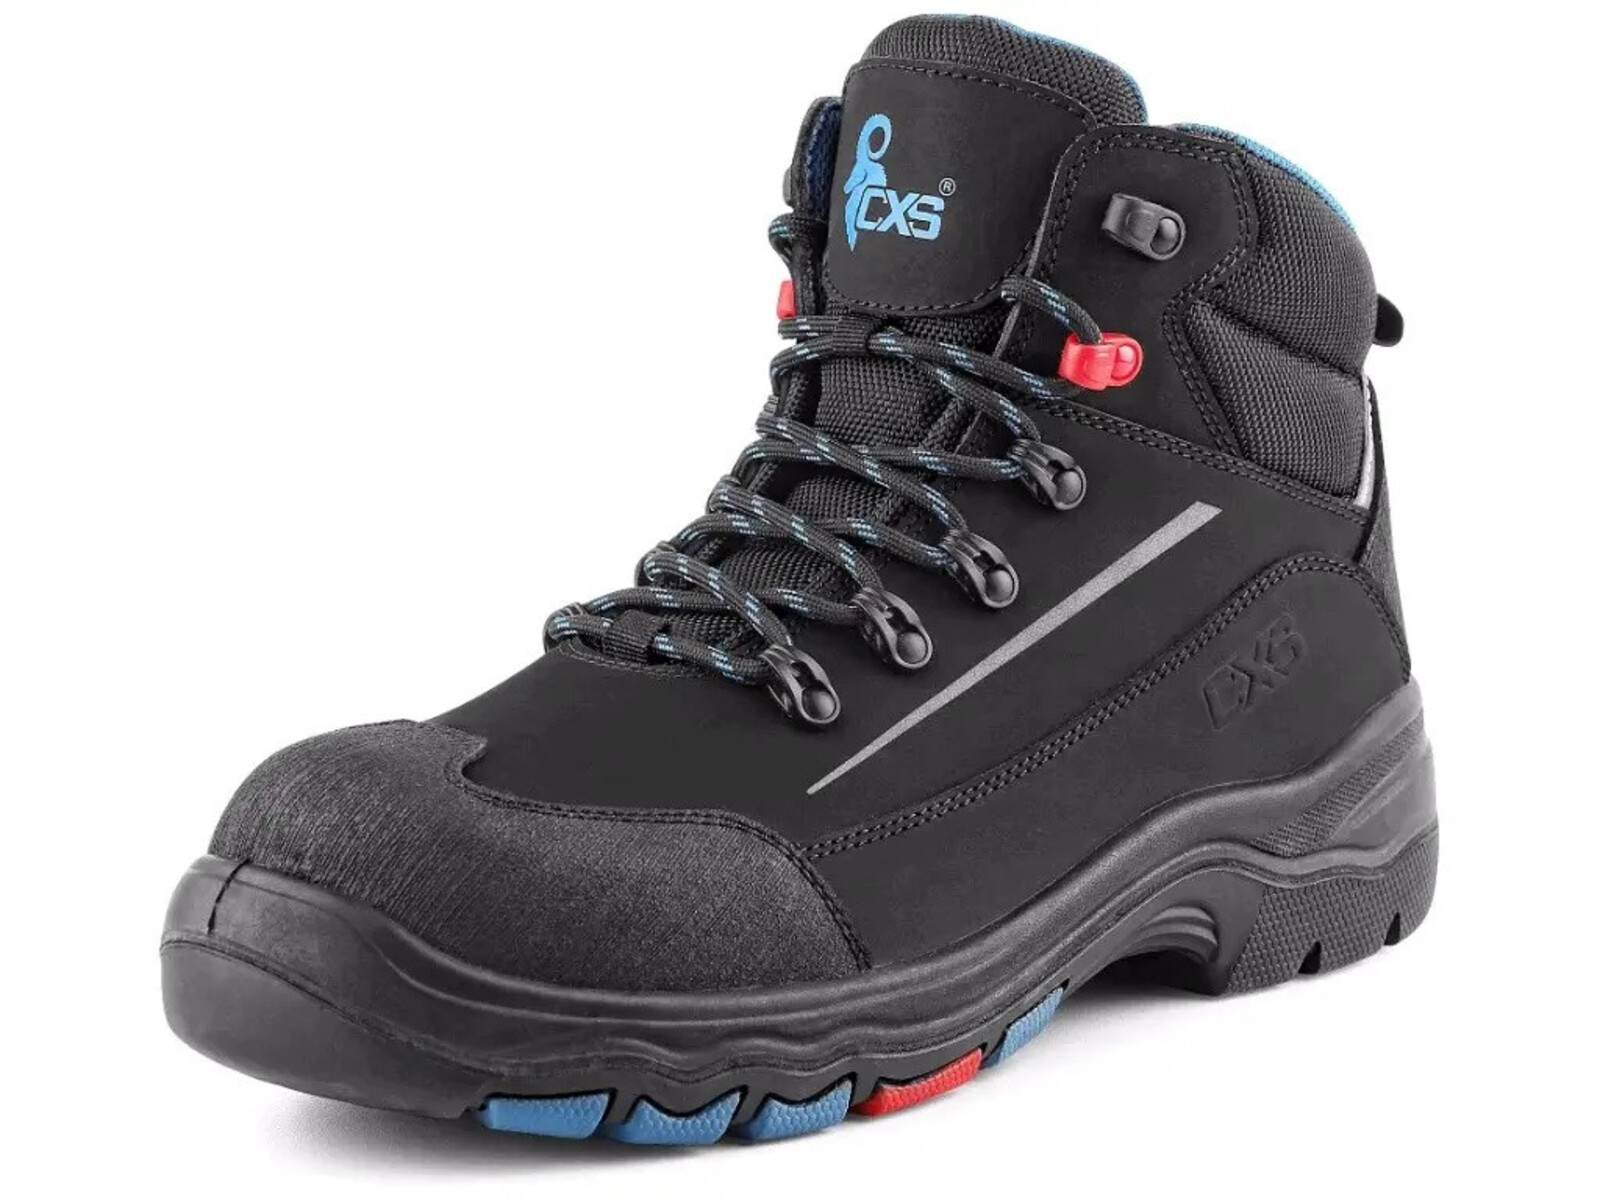 Bezpečnostná členková obuv CXS Land Senja S3S FO HRO SC SR - veľkosť: 45, farba: čierna/modrá